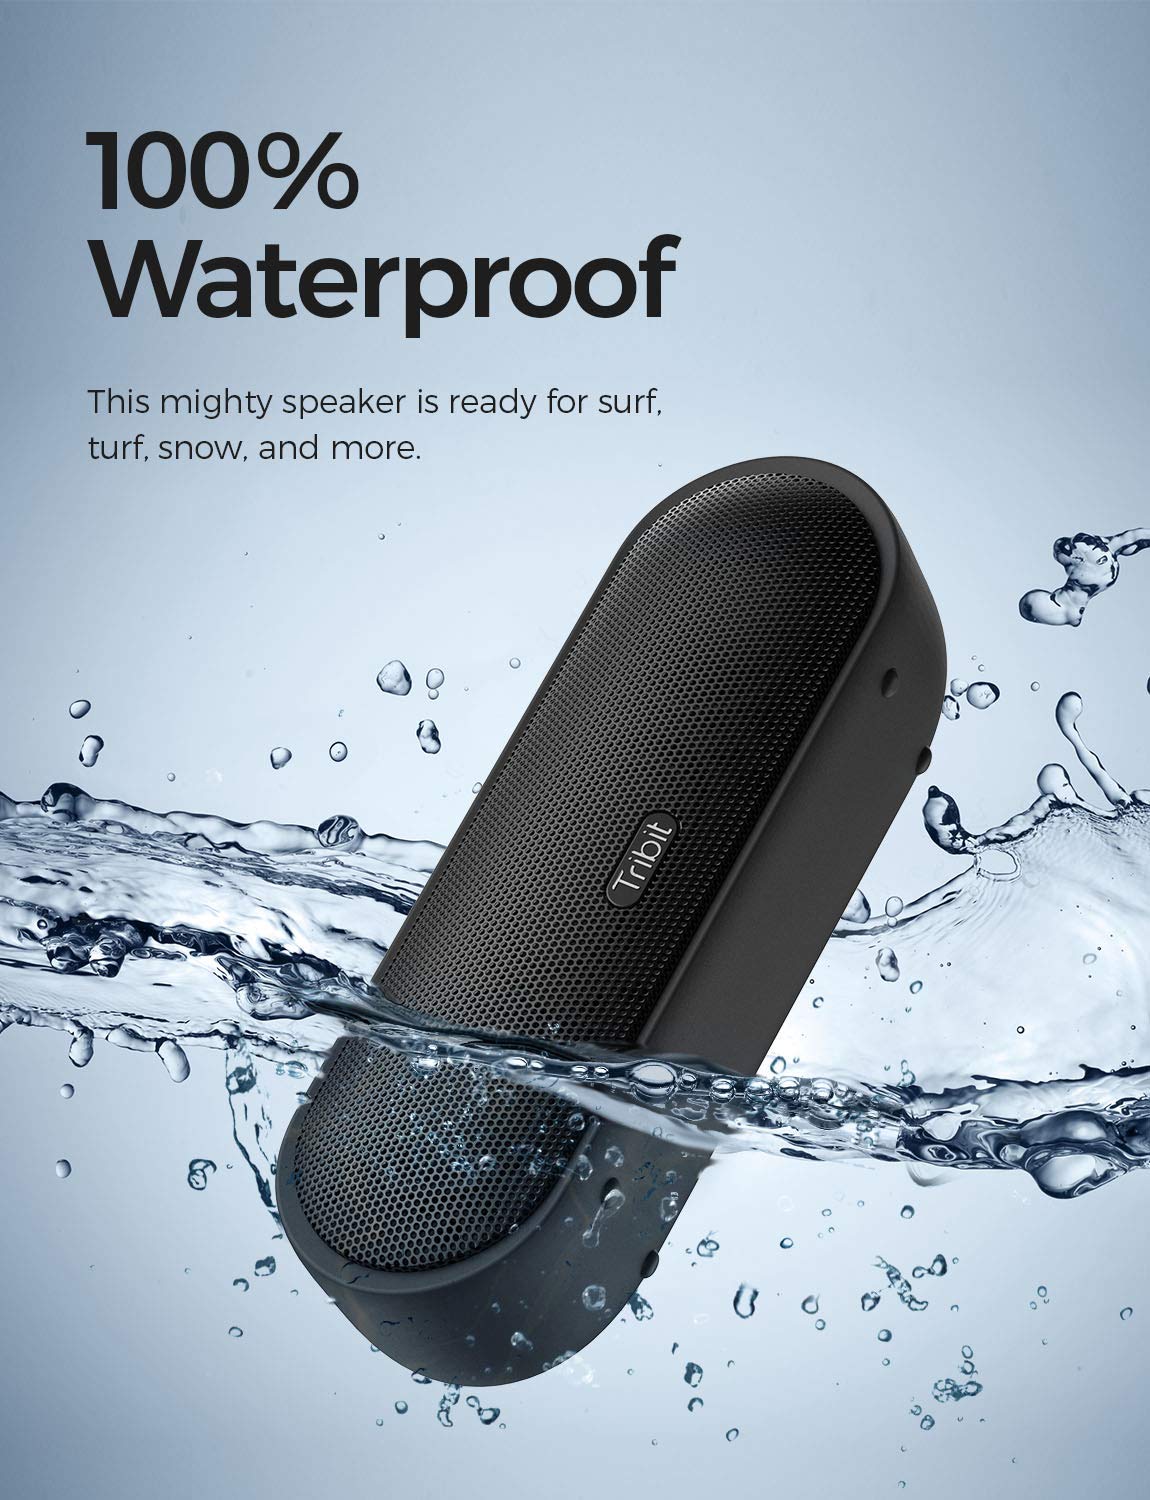 Cassa Altoparlante Bluetooth Portatile 24W, Tribit Maxsound Plus Speaker Bluetooth waterproof IPX7, 24 Ore di Play con XBass suono potente per Smartphone, Computer, TV, Viaggio